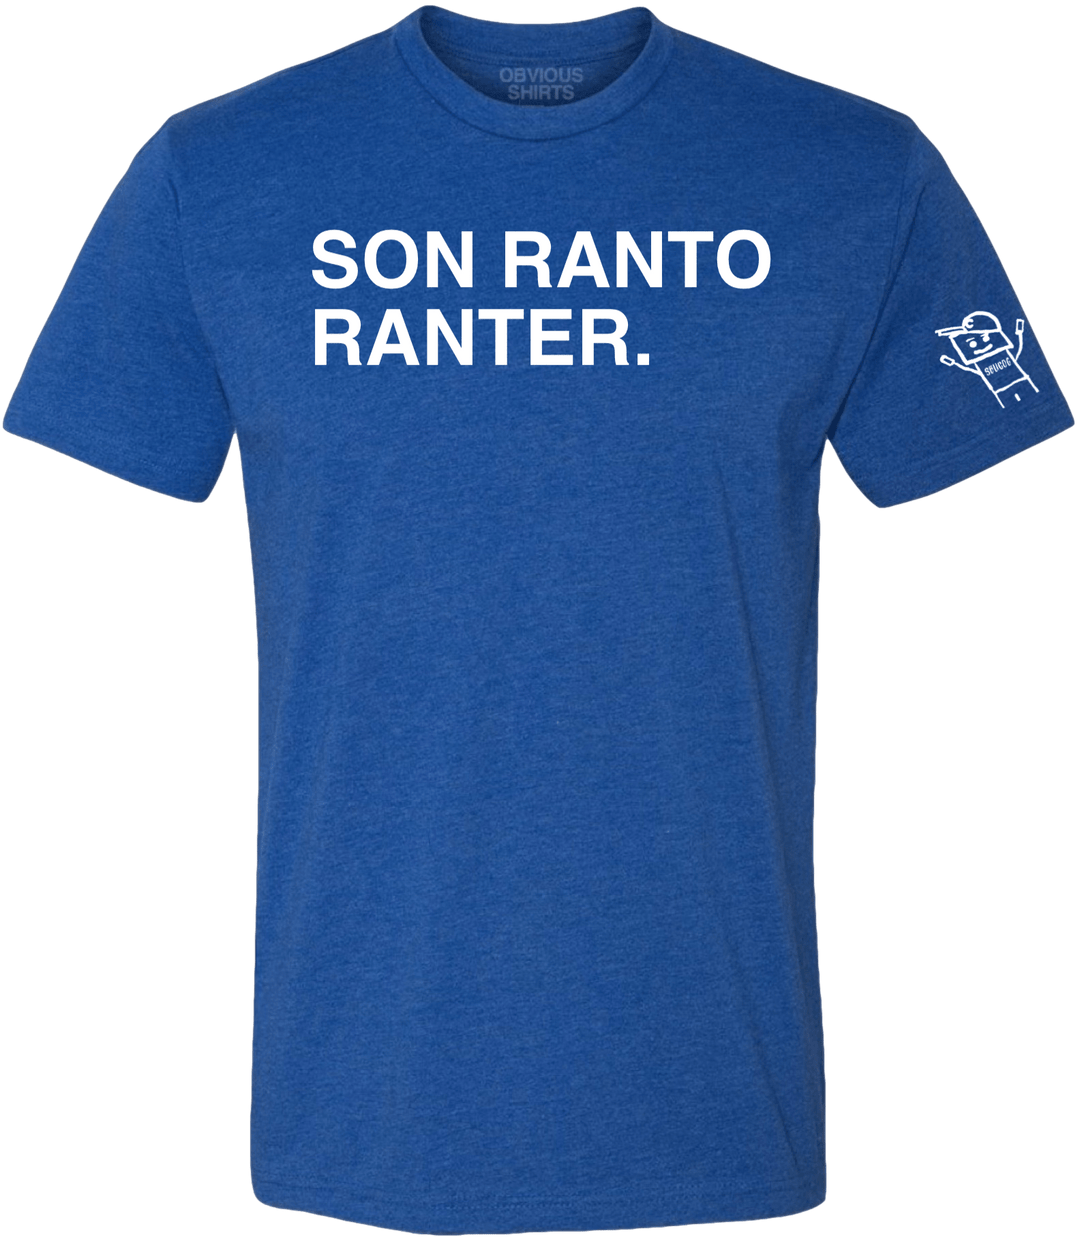 SON RANTO RANTER. - OBVIOUS SHIRTS